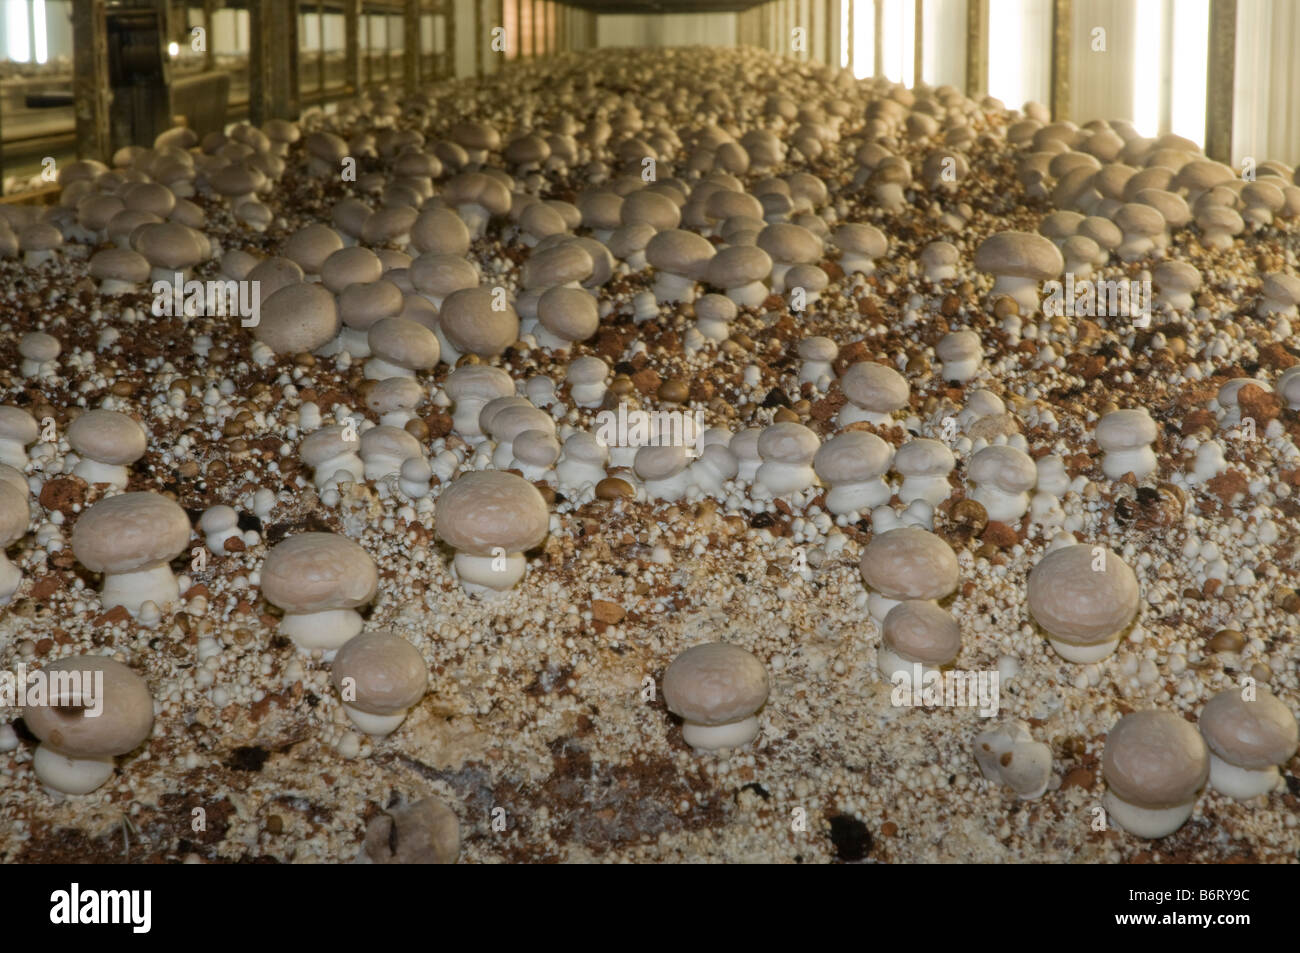 Regale aus organischer Kompost werden unter kontrollierten Umweltbedingungen für die intensive Portobello mushroom Landwirtschaft gehalten. Stockfoto